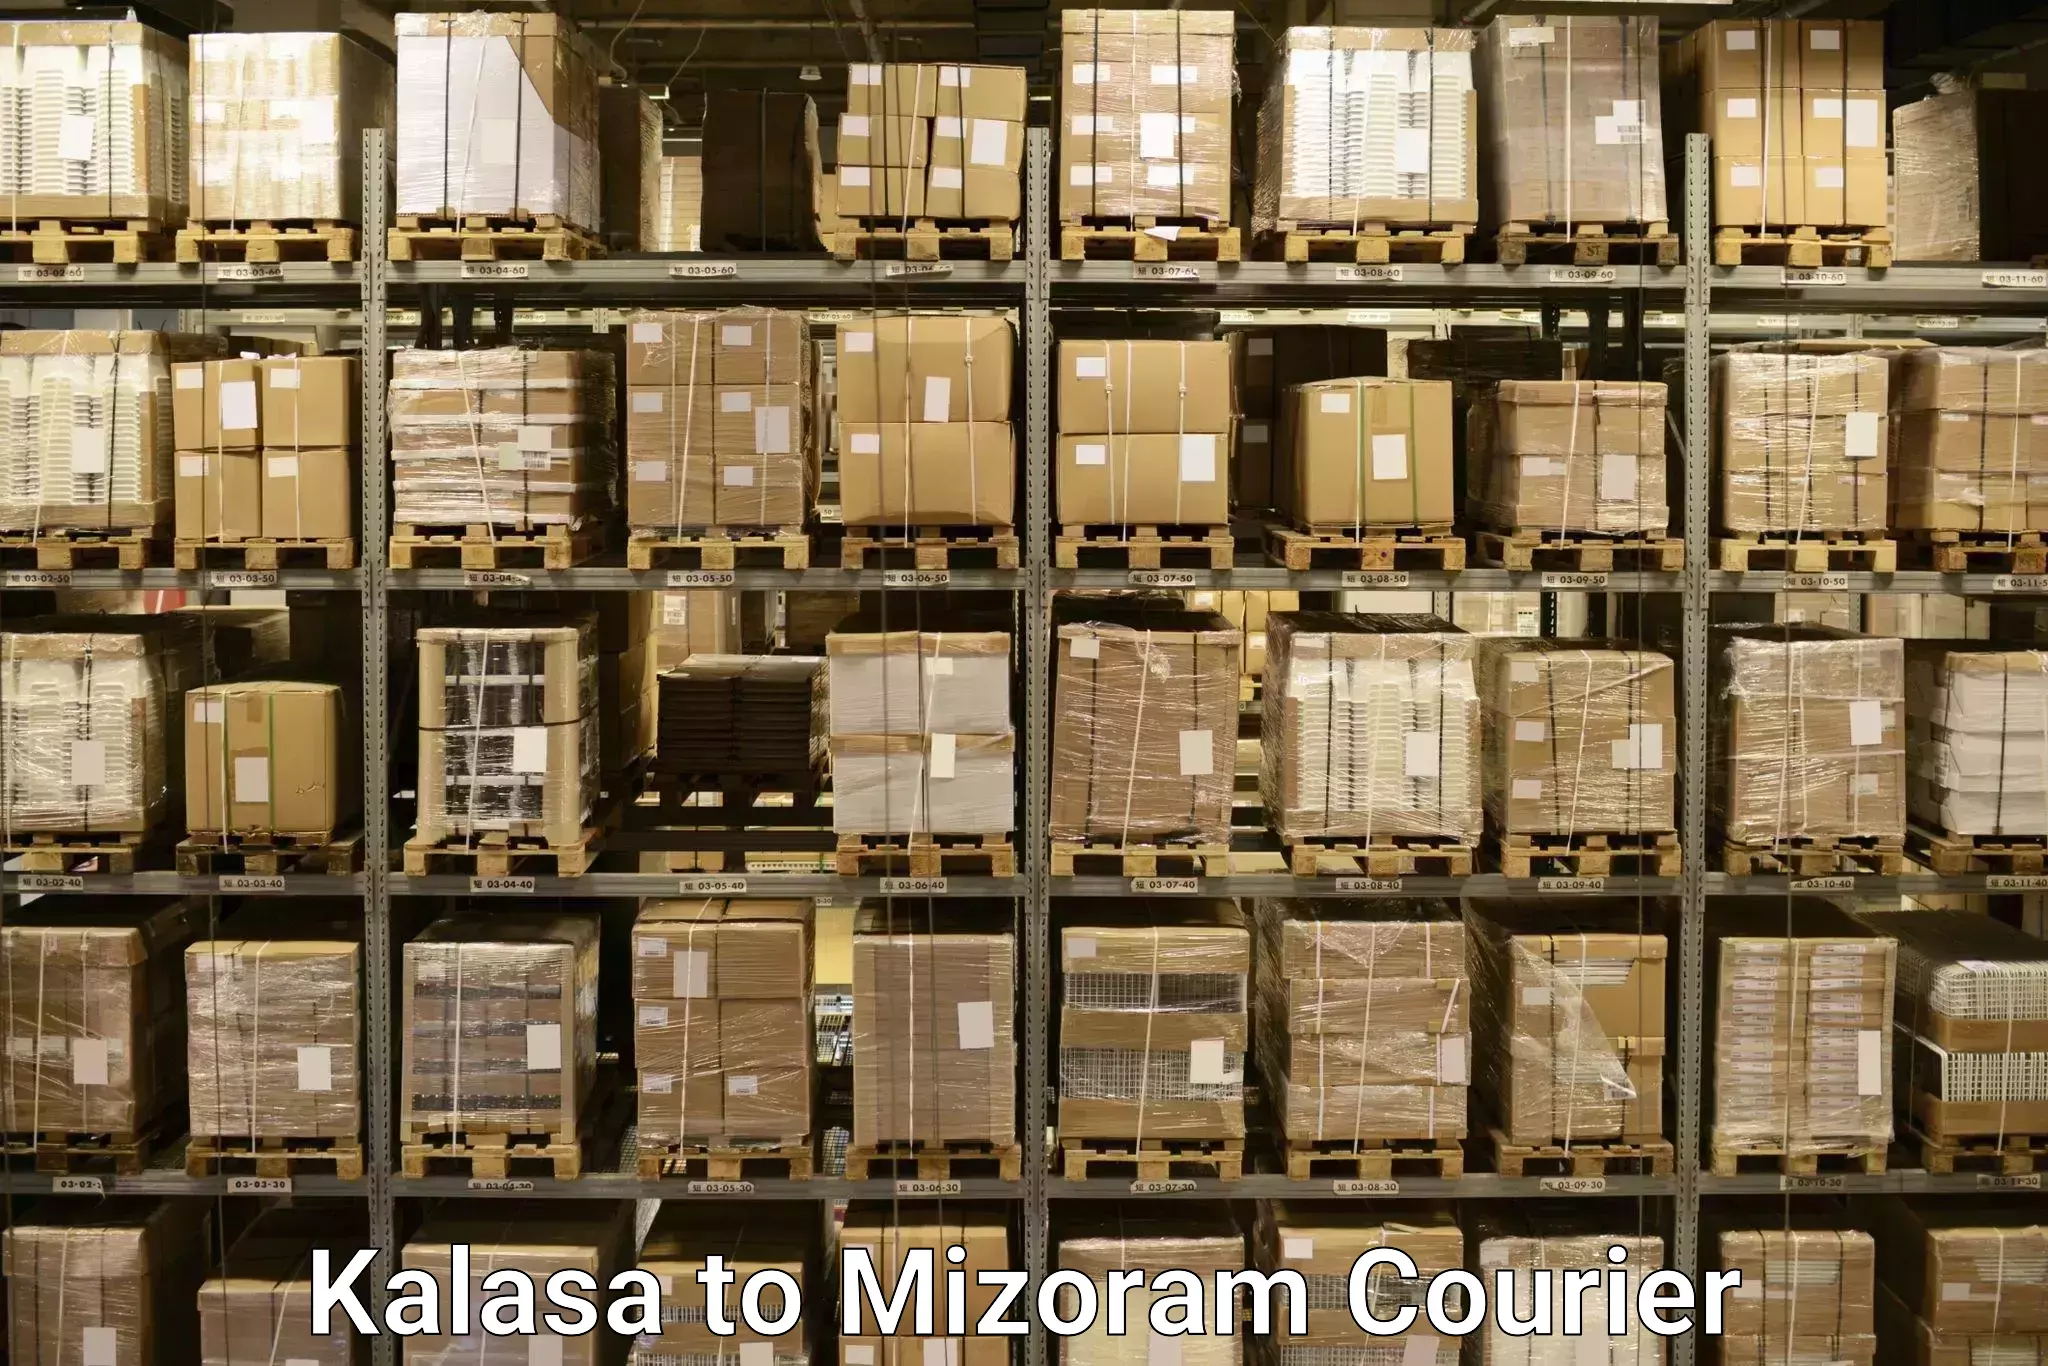 Luggage transport deals Kalasa to Mizoram